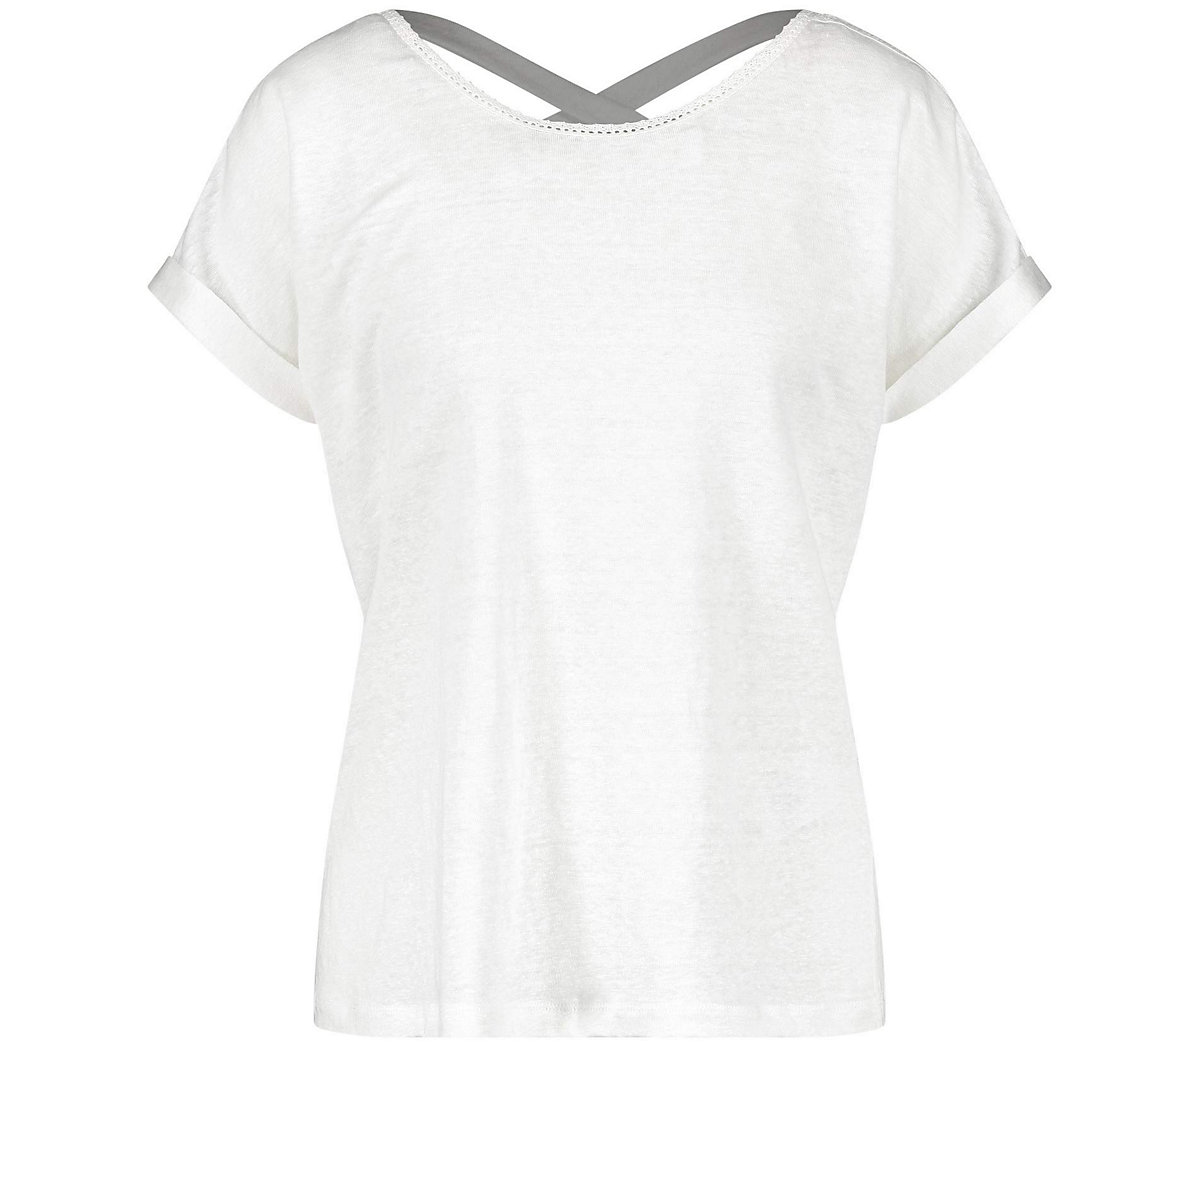 Gerry Weber T-Shirt für Mädchen offwhite